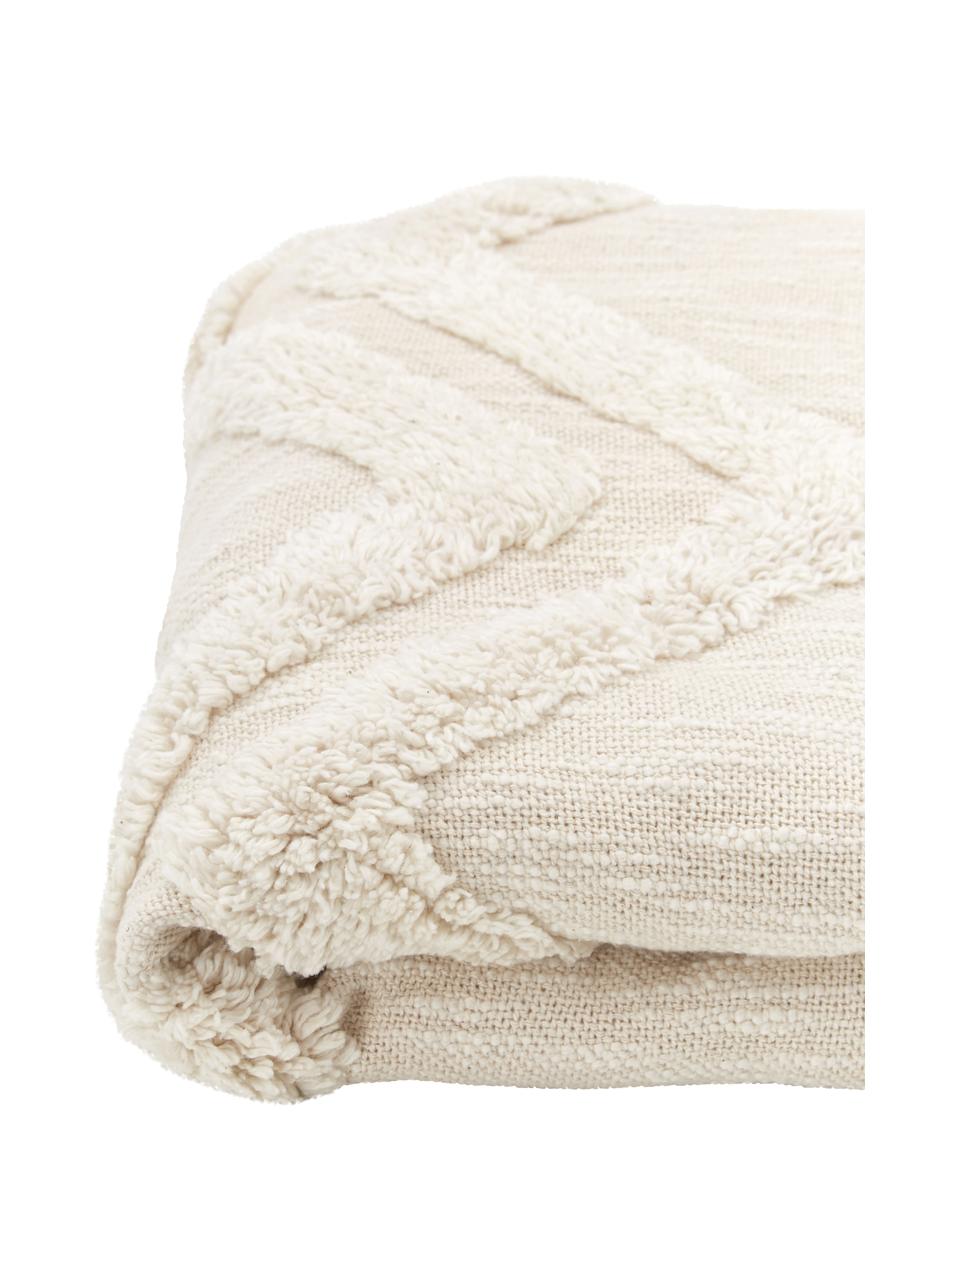 Baumwolldecke Akesha mit getuftetem Zickzack-Muster, 100% Baumwolle, Cremeweiss, B 130 x L 170 cm